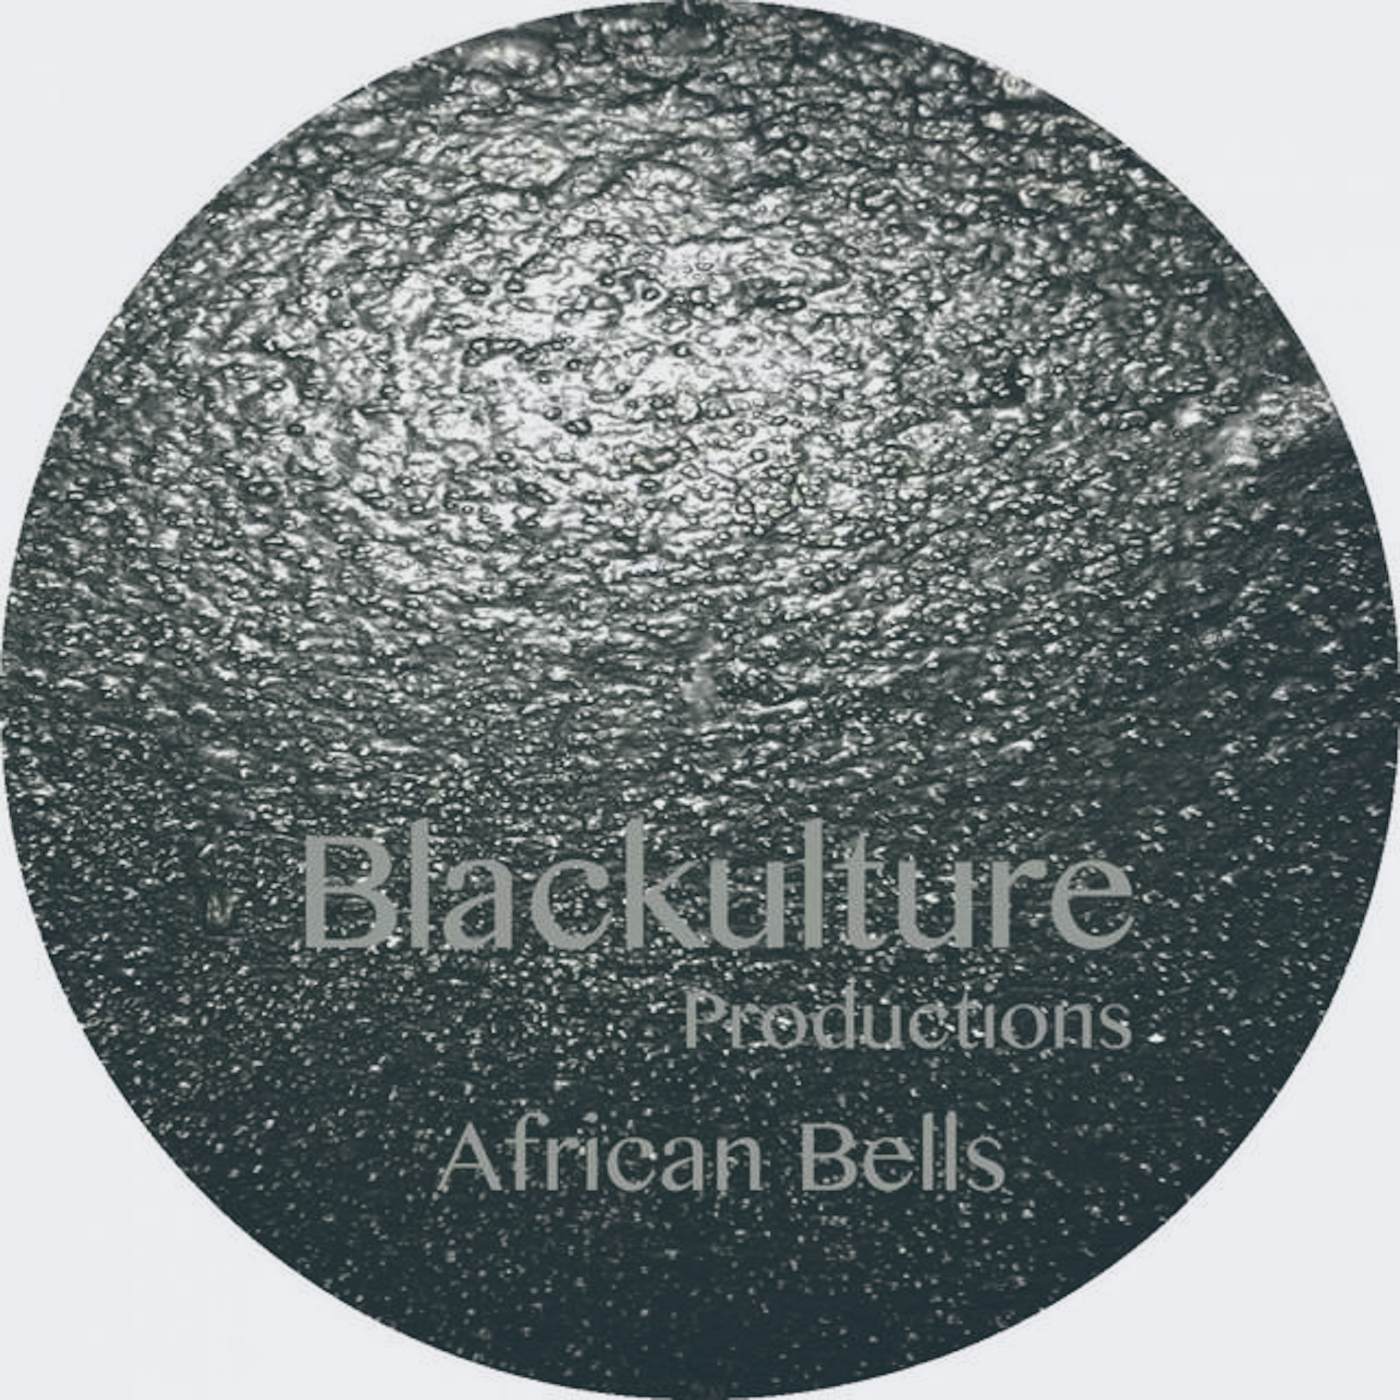 Blackulture Productions